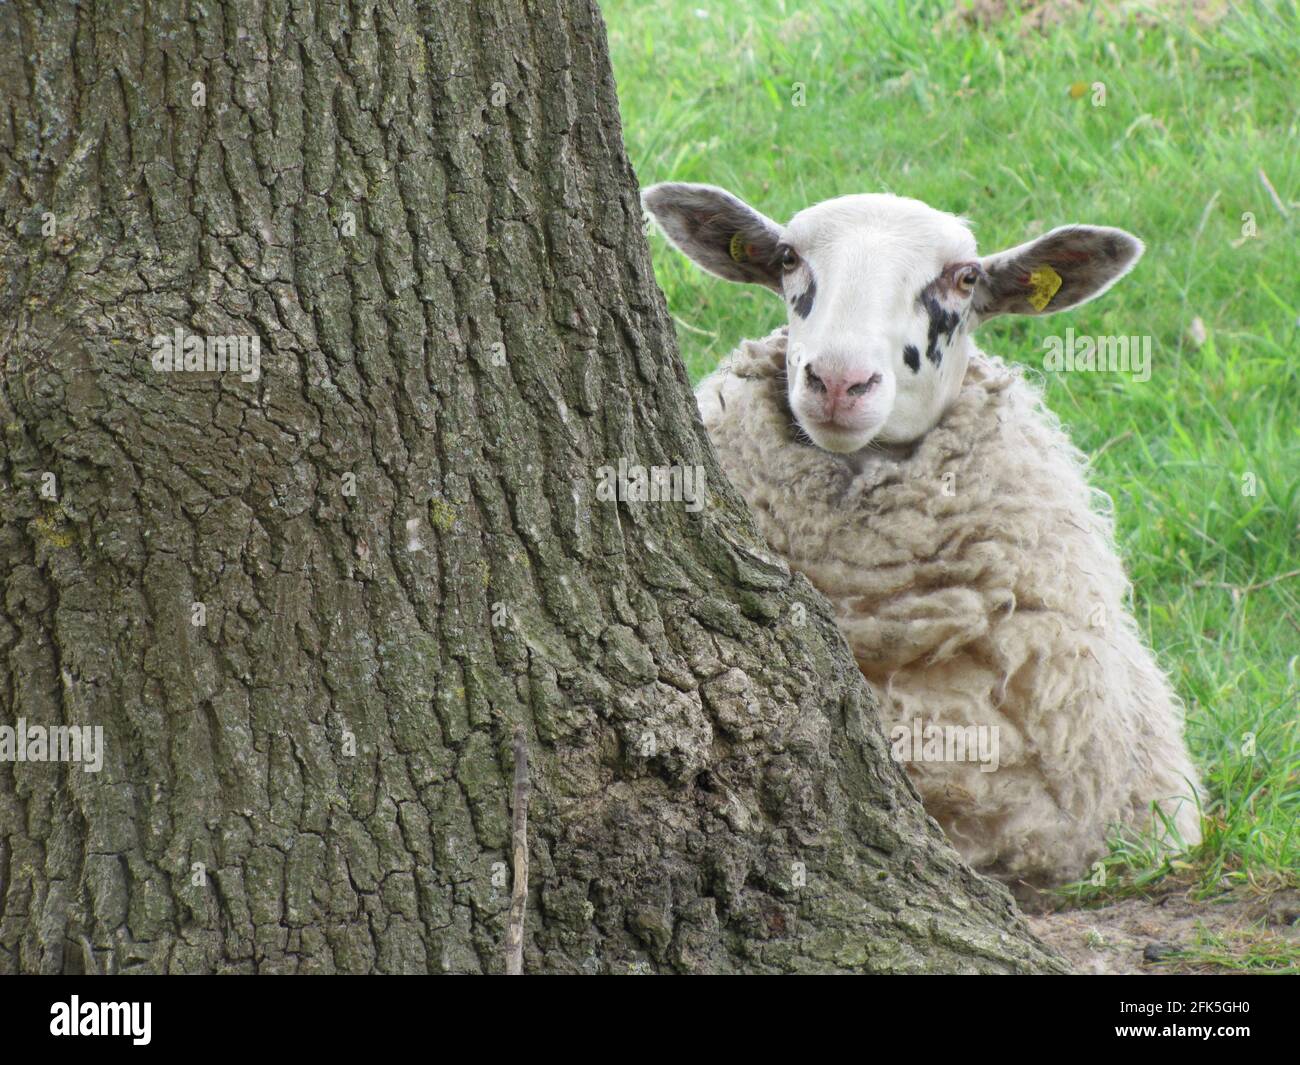 Sheep and tree/ Schaf hinter einer Eiche Stock Photo